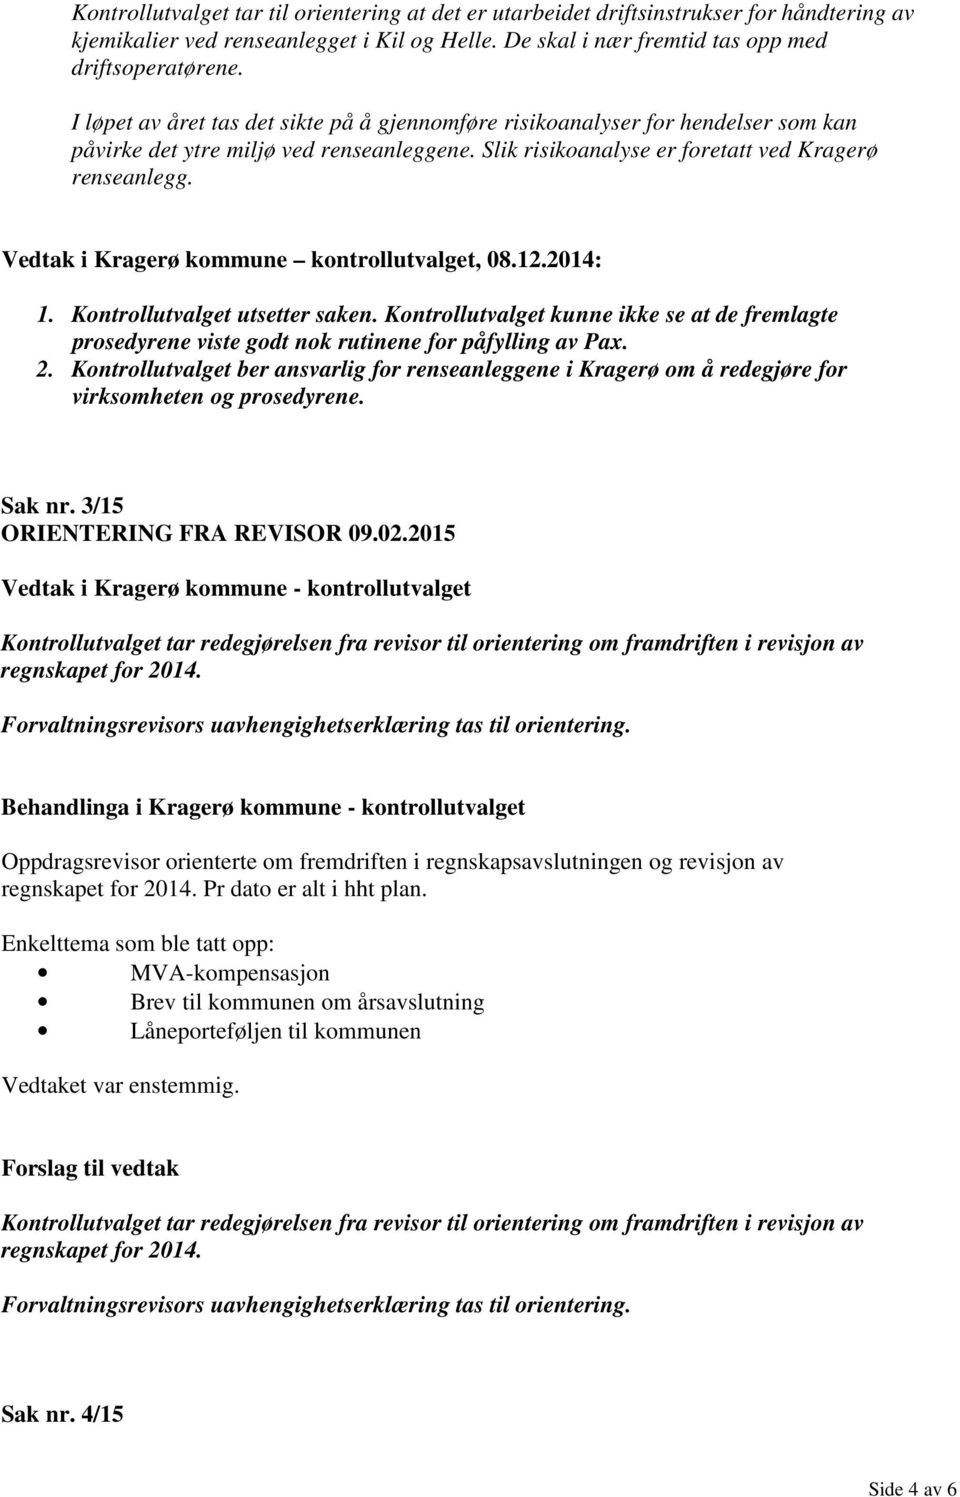 Vedtak i Kragerø kommune kontrollutvalget, 08.12.2014: 1. Kontrollutvalget utsetter saken. Kontrollutvalget kunne ikke se at de fremlagte prosedyrene viste godt nok rutinene for påfylling av Pax. 2.